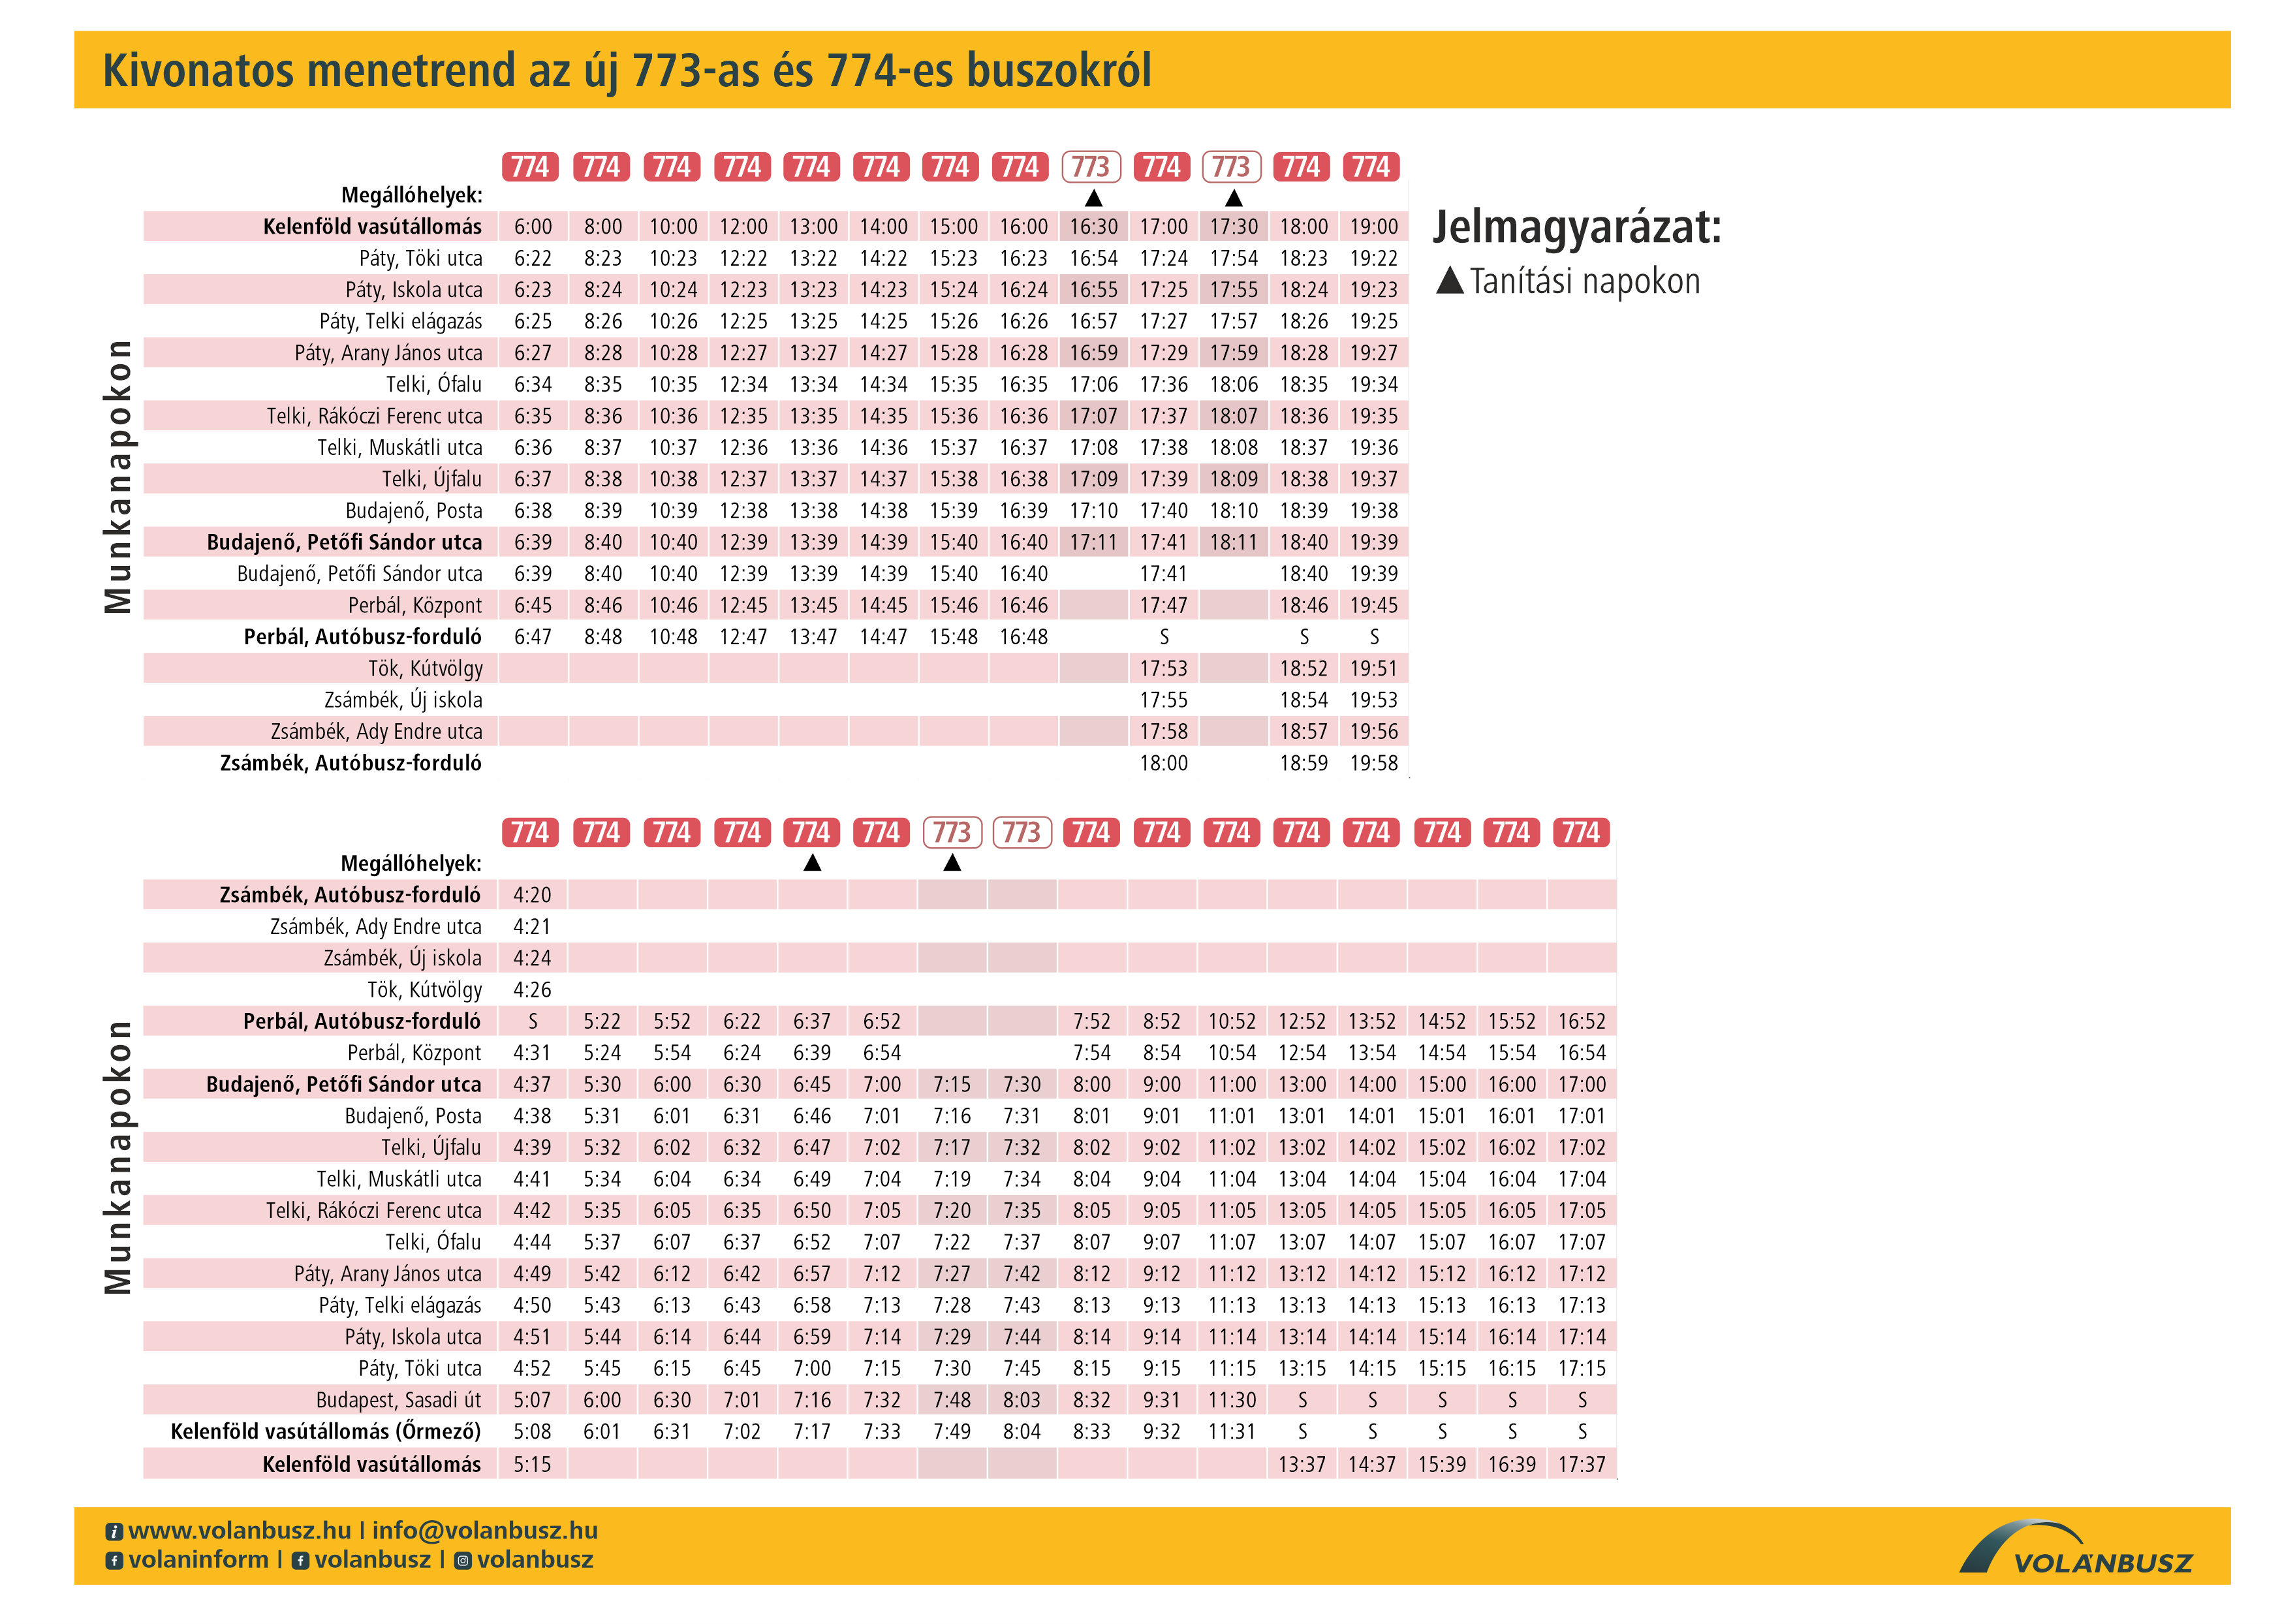 A 774-es busz kivonatos menetrendjének képe